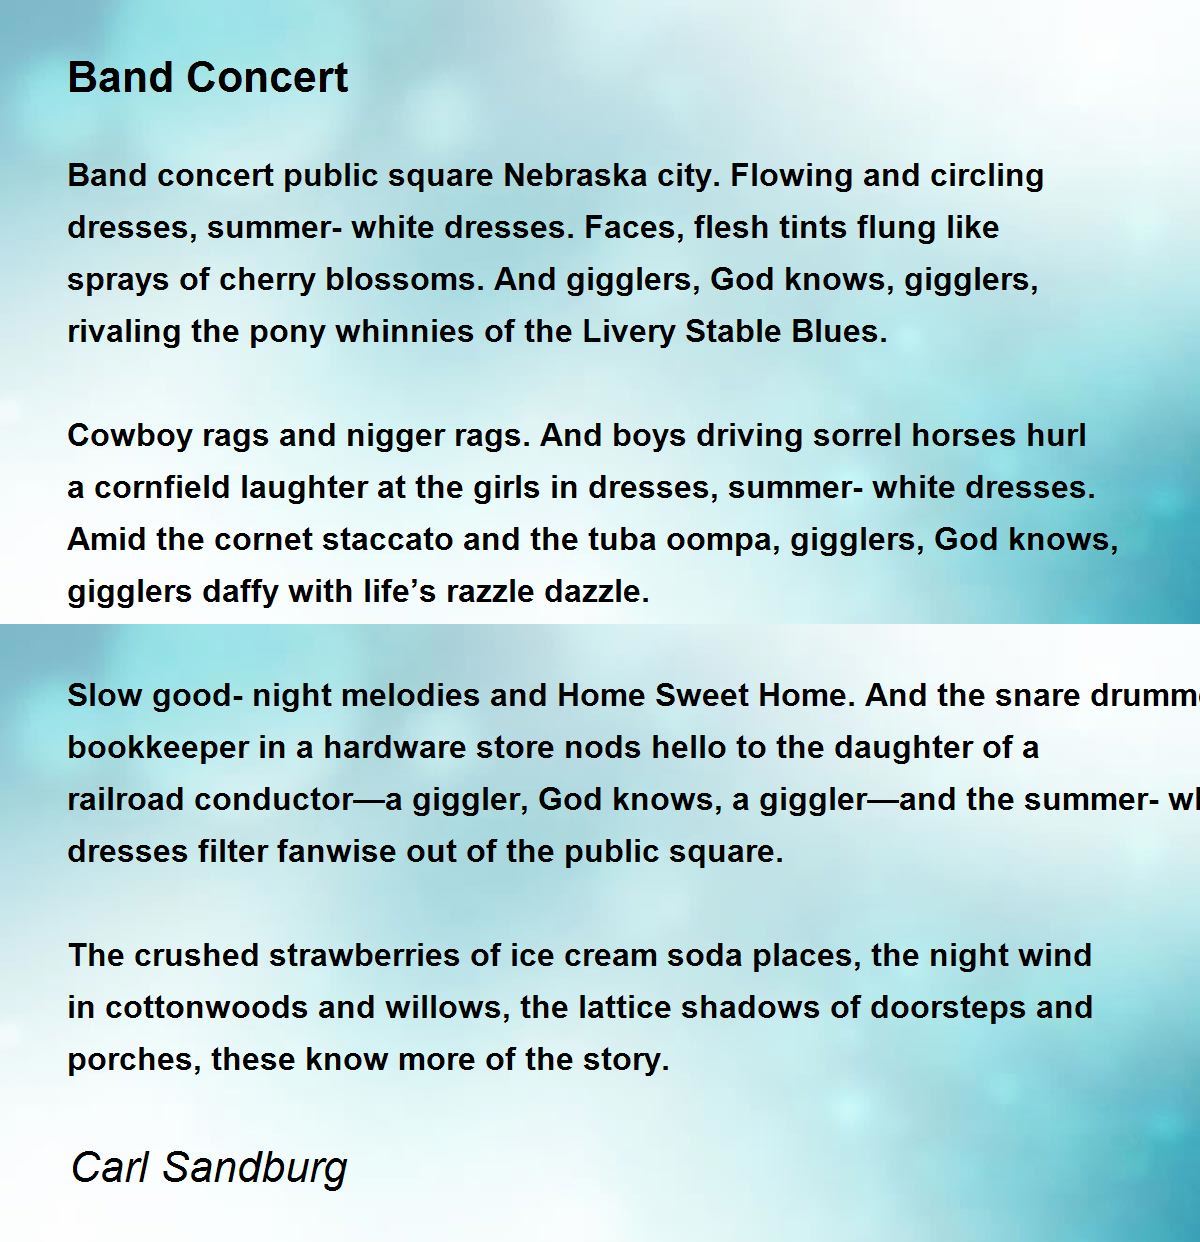 Band Concert Poem by Carl Sandburg - Poem Hunter